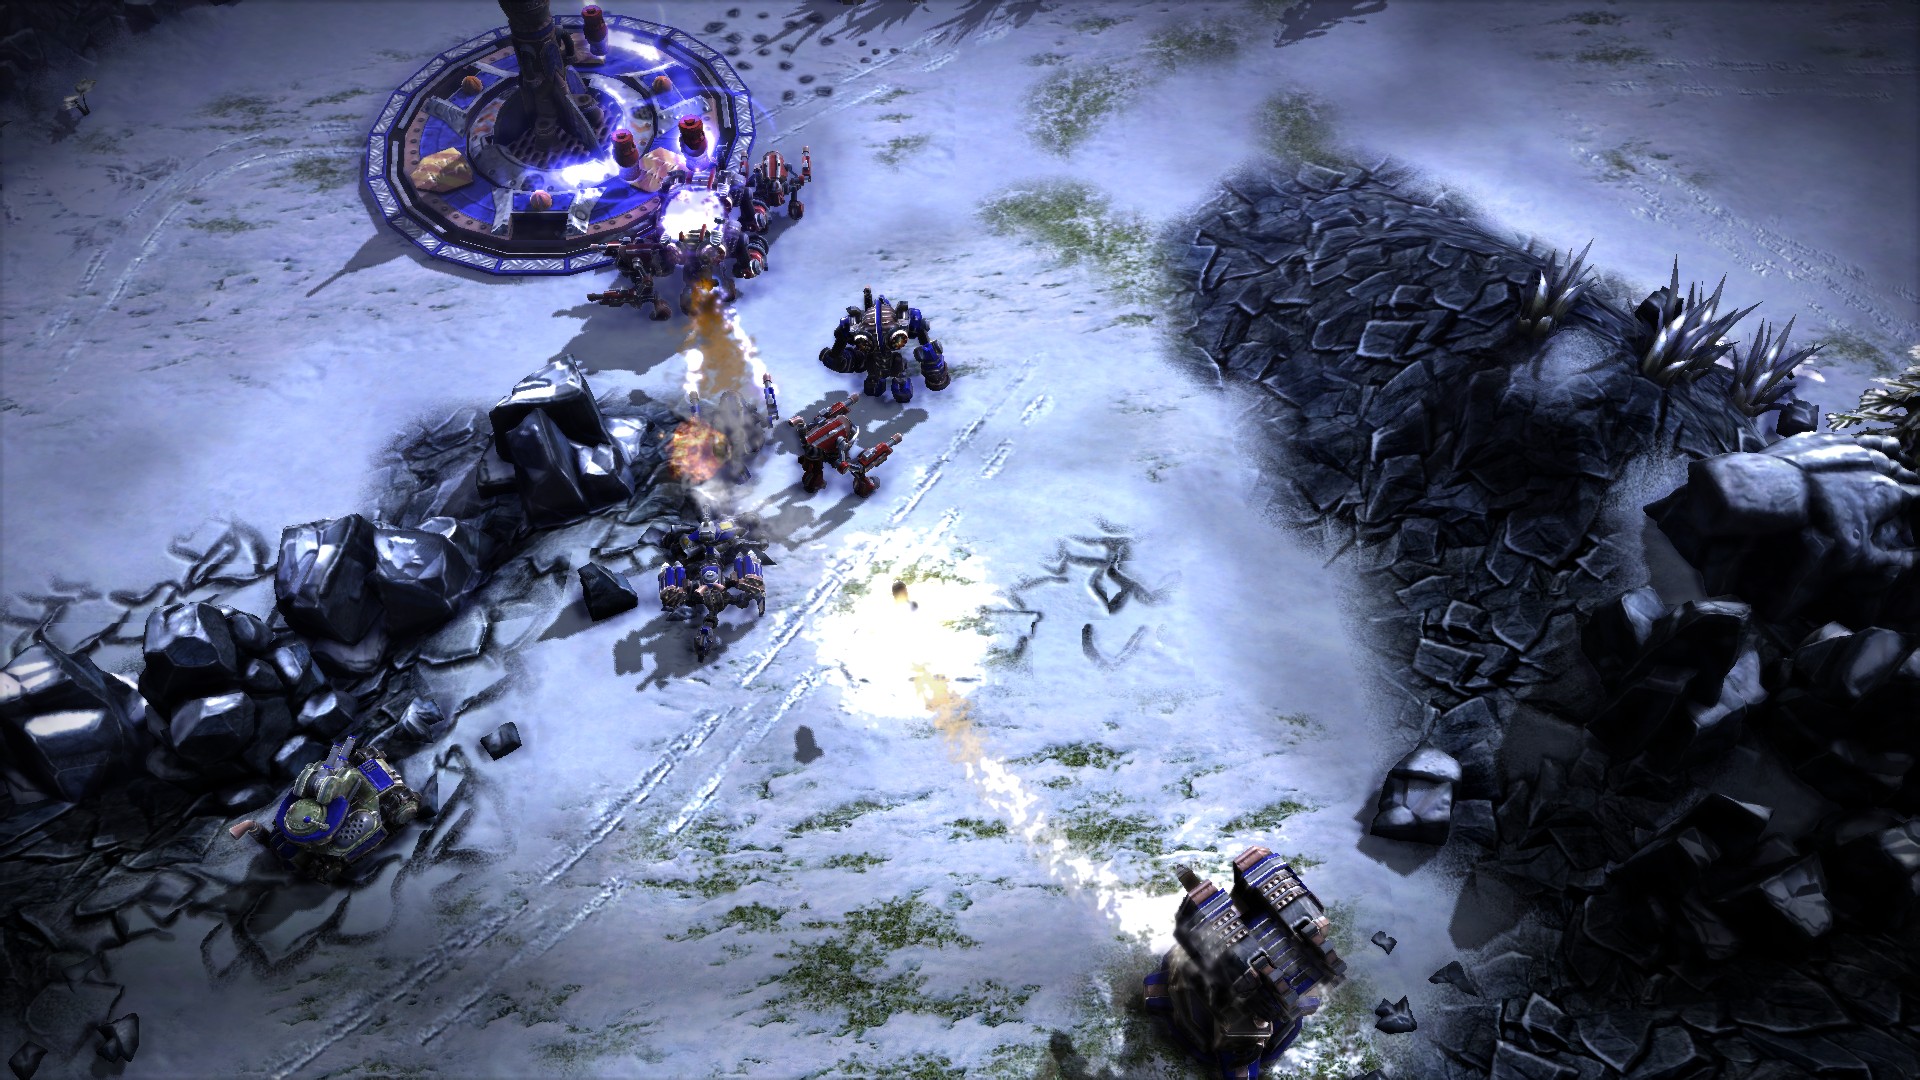 Arena Wars 2 screenshot